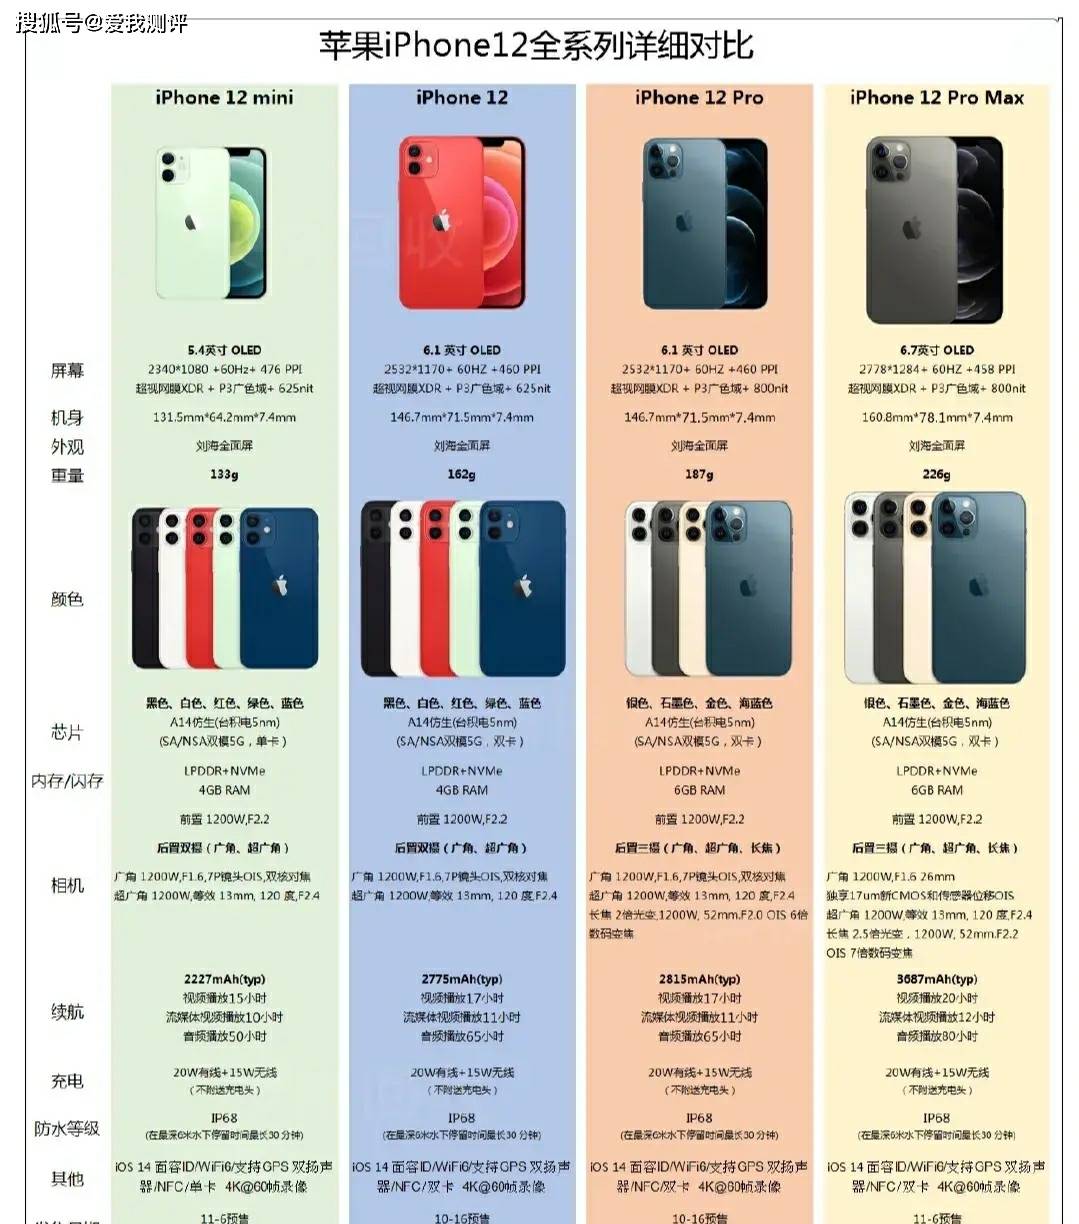 iphone12系列最全的详细参数,参数党可以看看